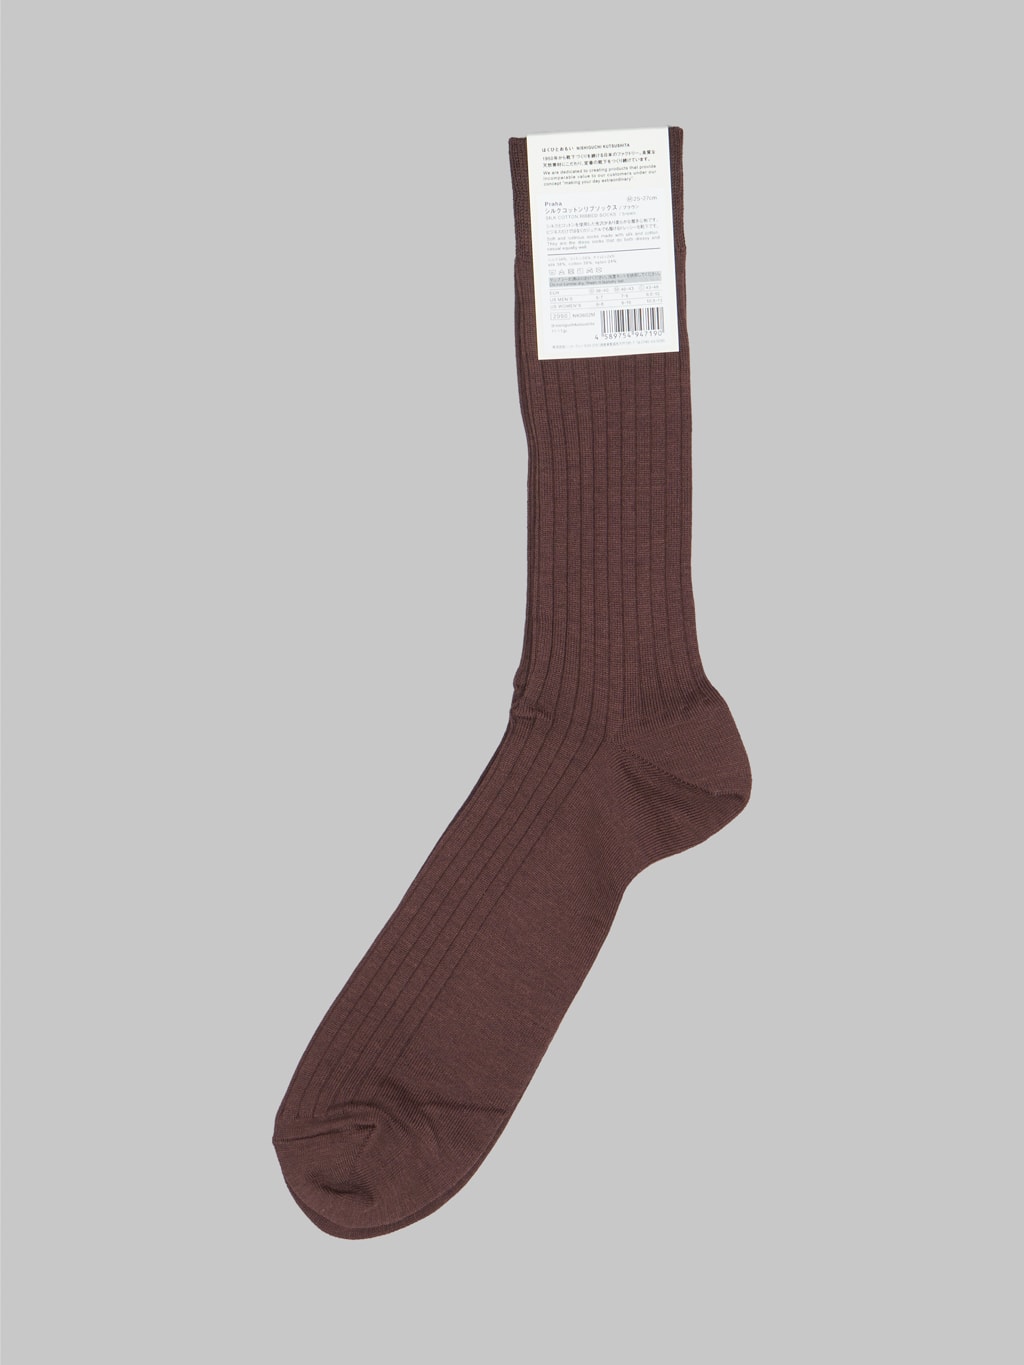 nishiguchi kutsushita silk cotton ribbed socks brown label